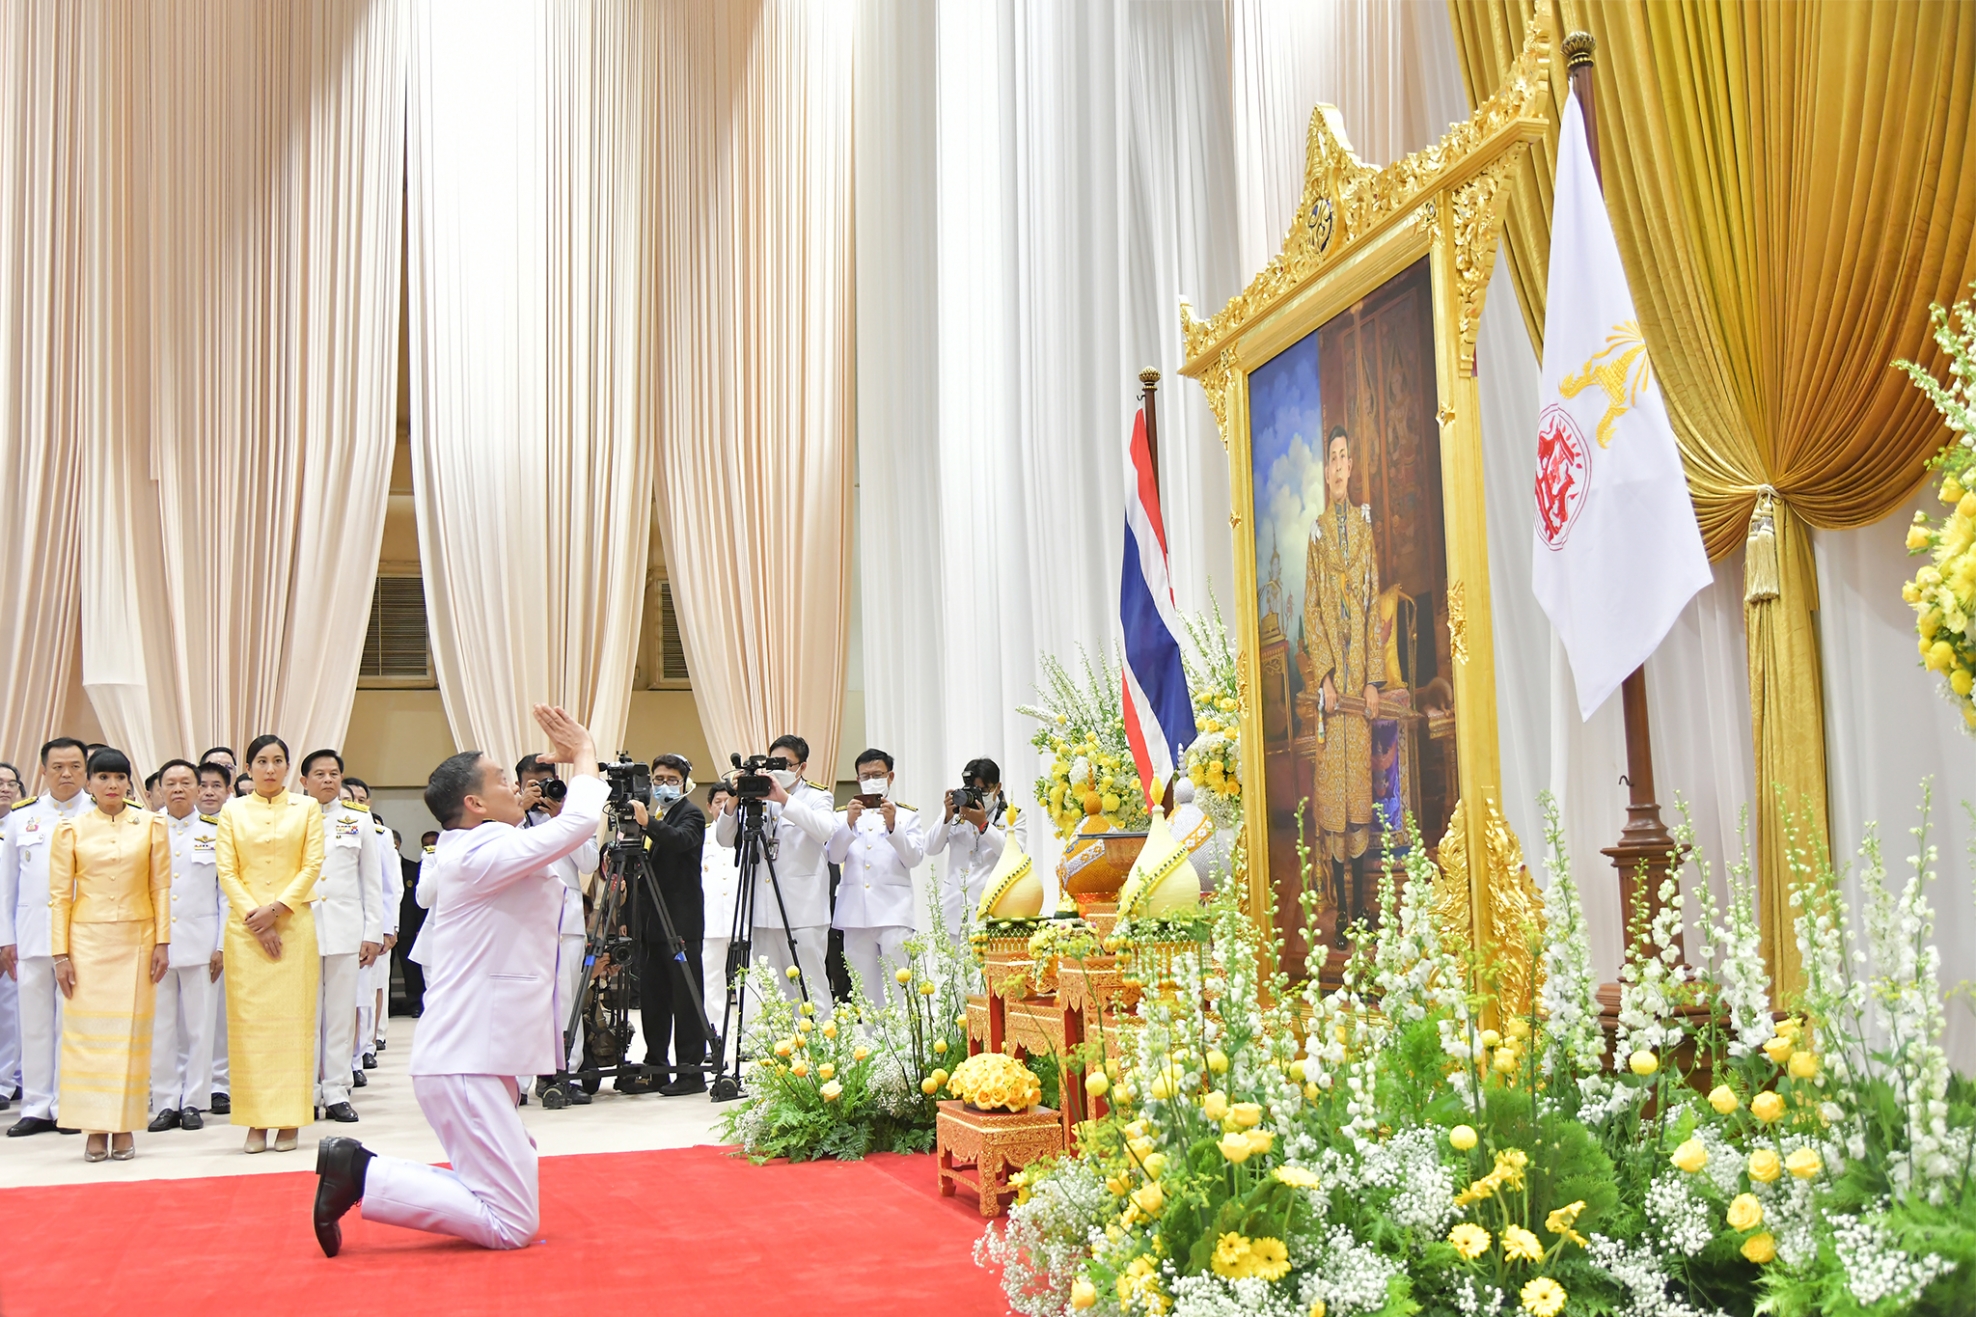 Thailand's new prime minister